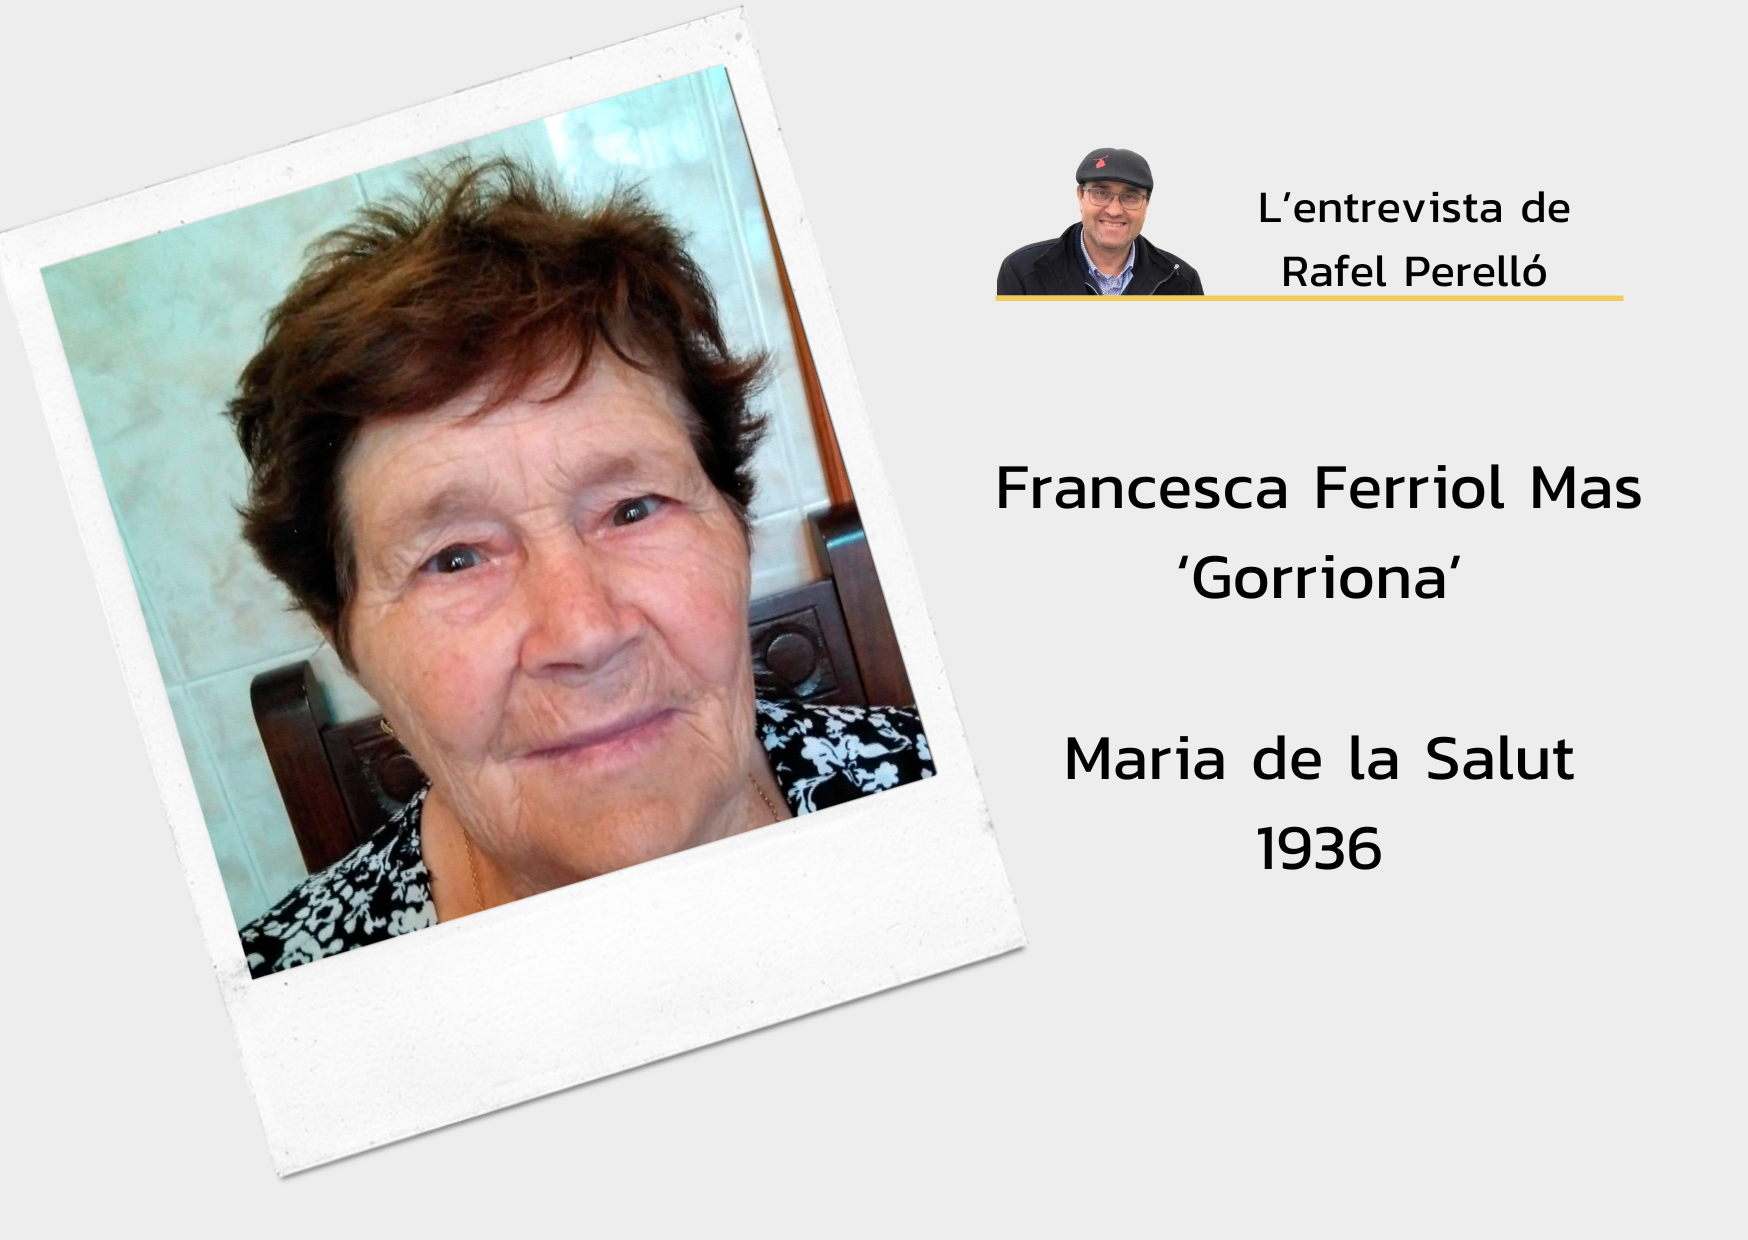 Francesca Ferriol Mas ‘Gorriona’: “Posaven el plat de sopes enmig i tothom li pegava, això de posar un plat perhom no s’usava”